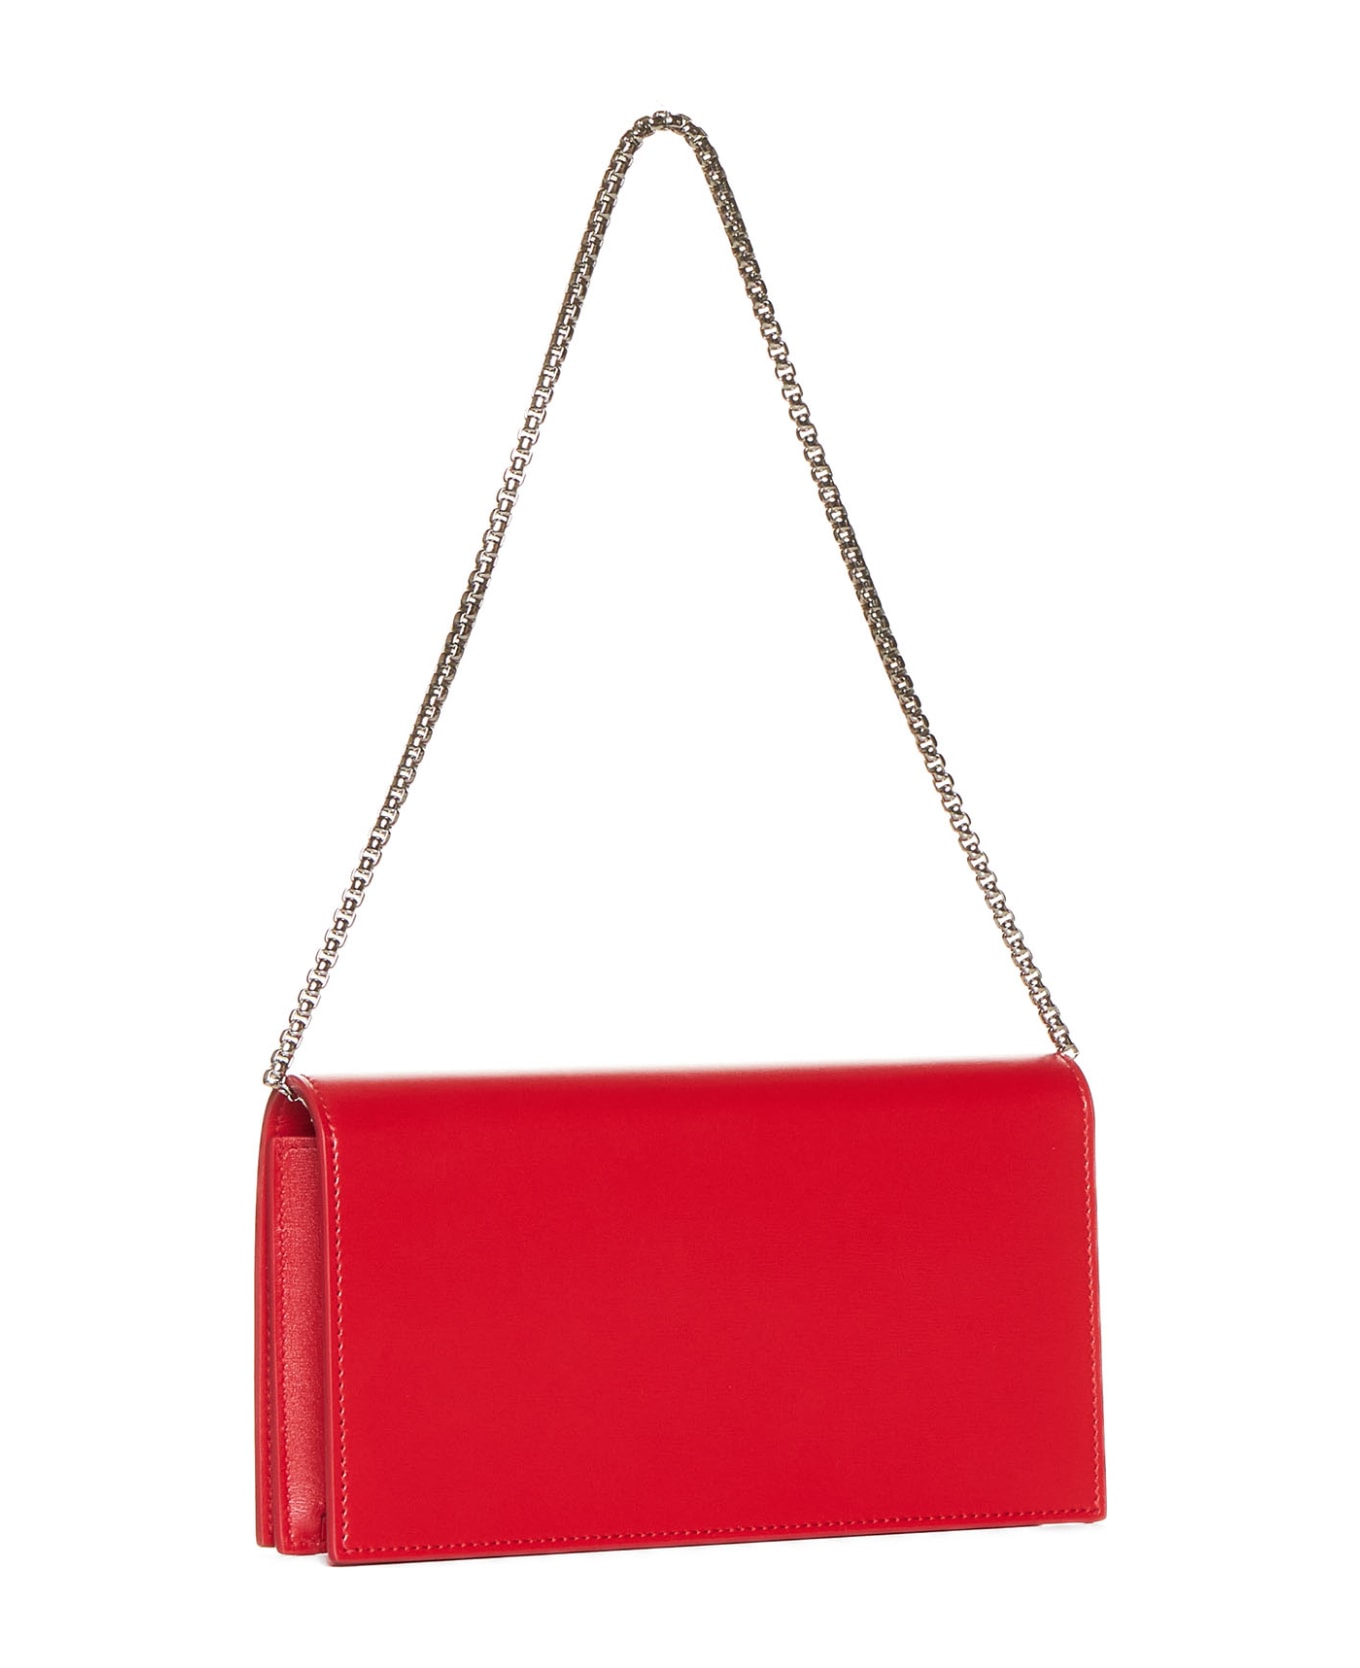 Ferragamo Shoulder Bag - Flame red || flame red